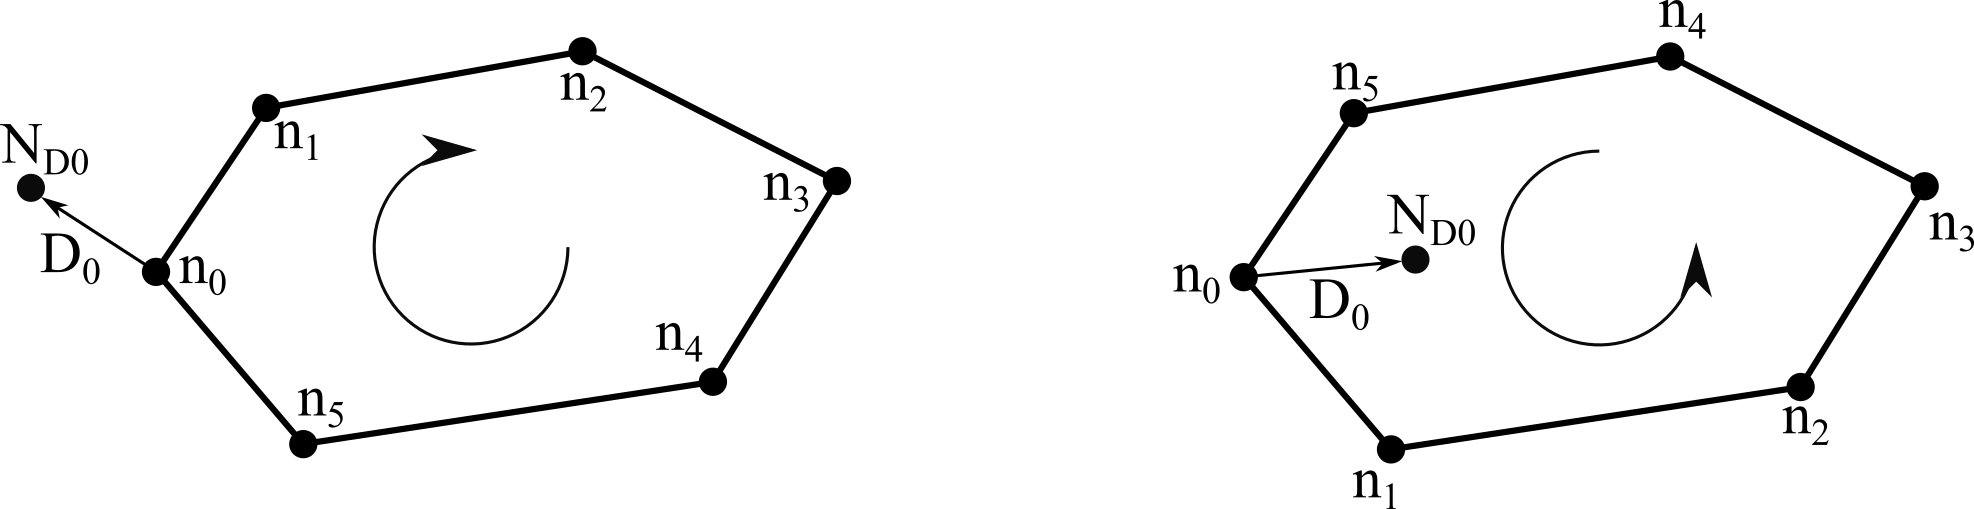 Схема определения ориентации контура